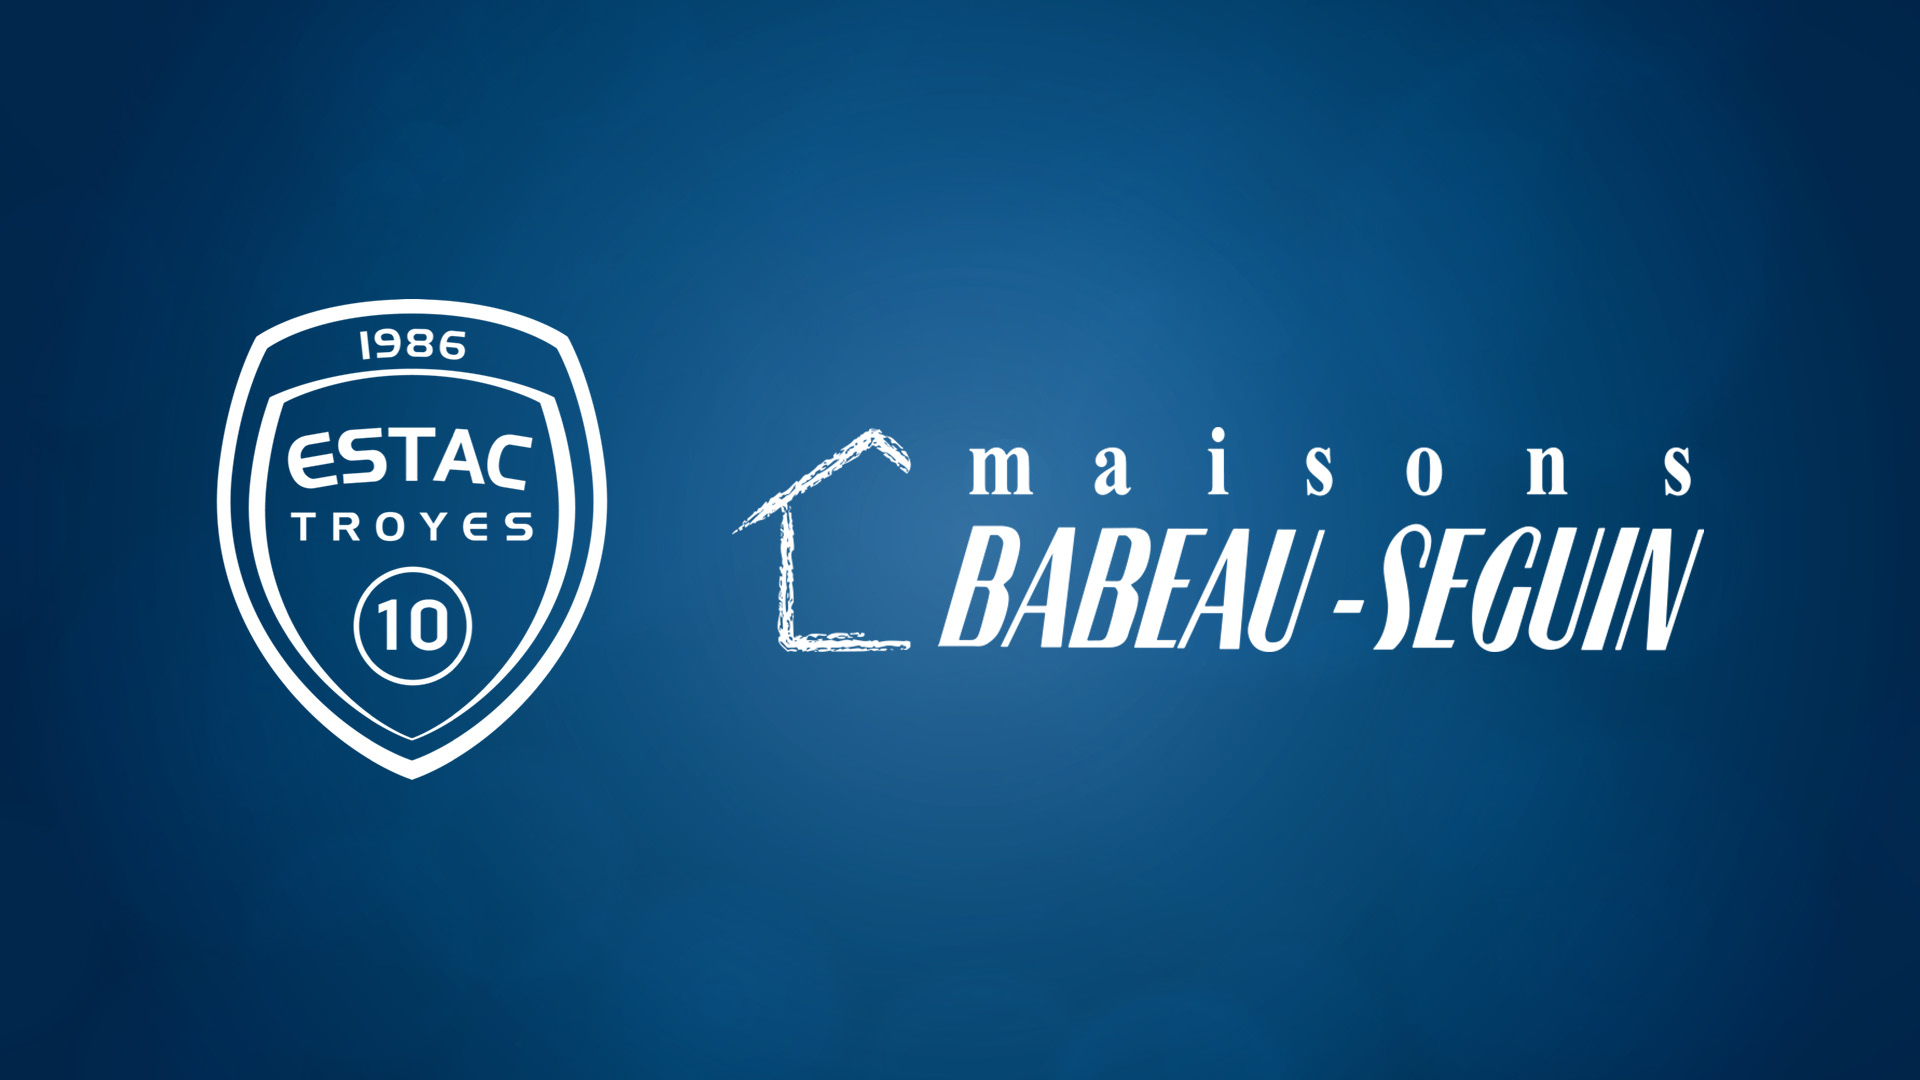 L'ESTAC remercie les Maisons Babeau-Seguin